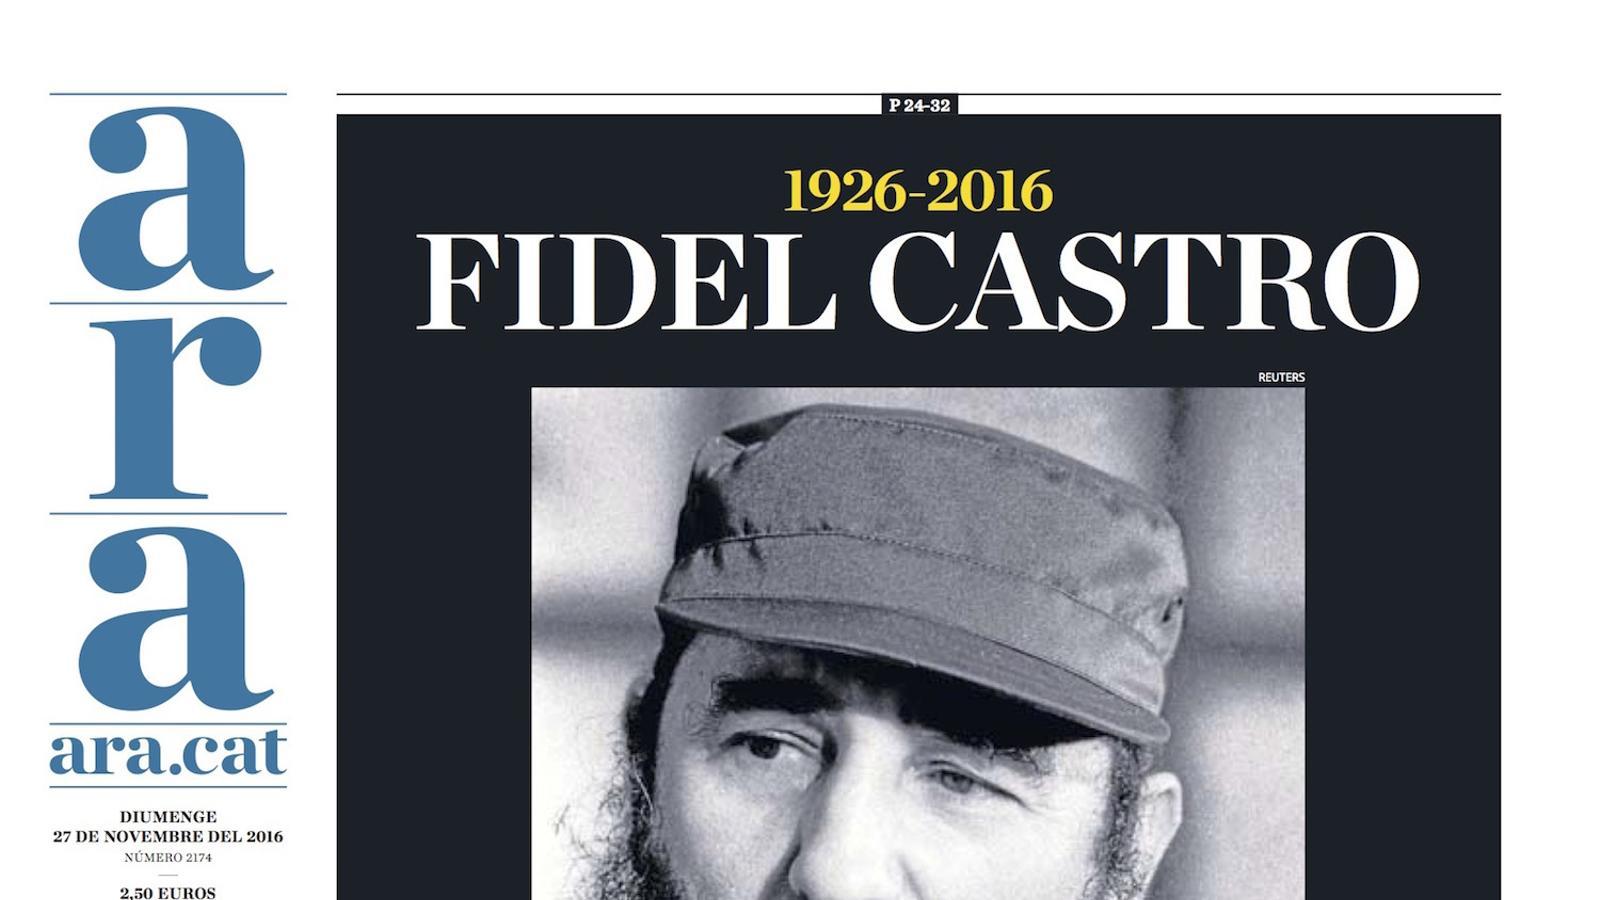 "Fidel Castro: la història l'absoldrà?", portada de l'ARA